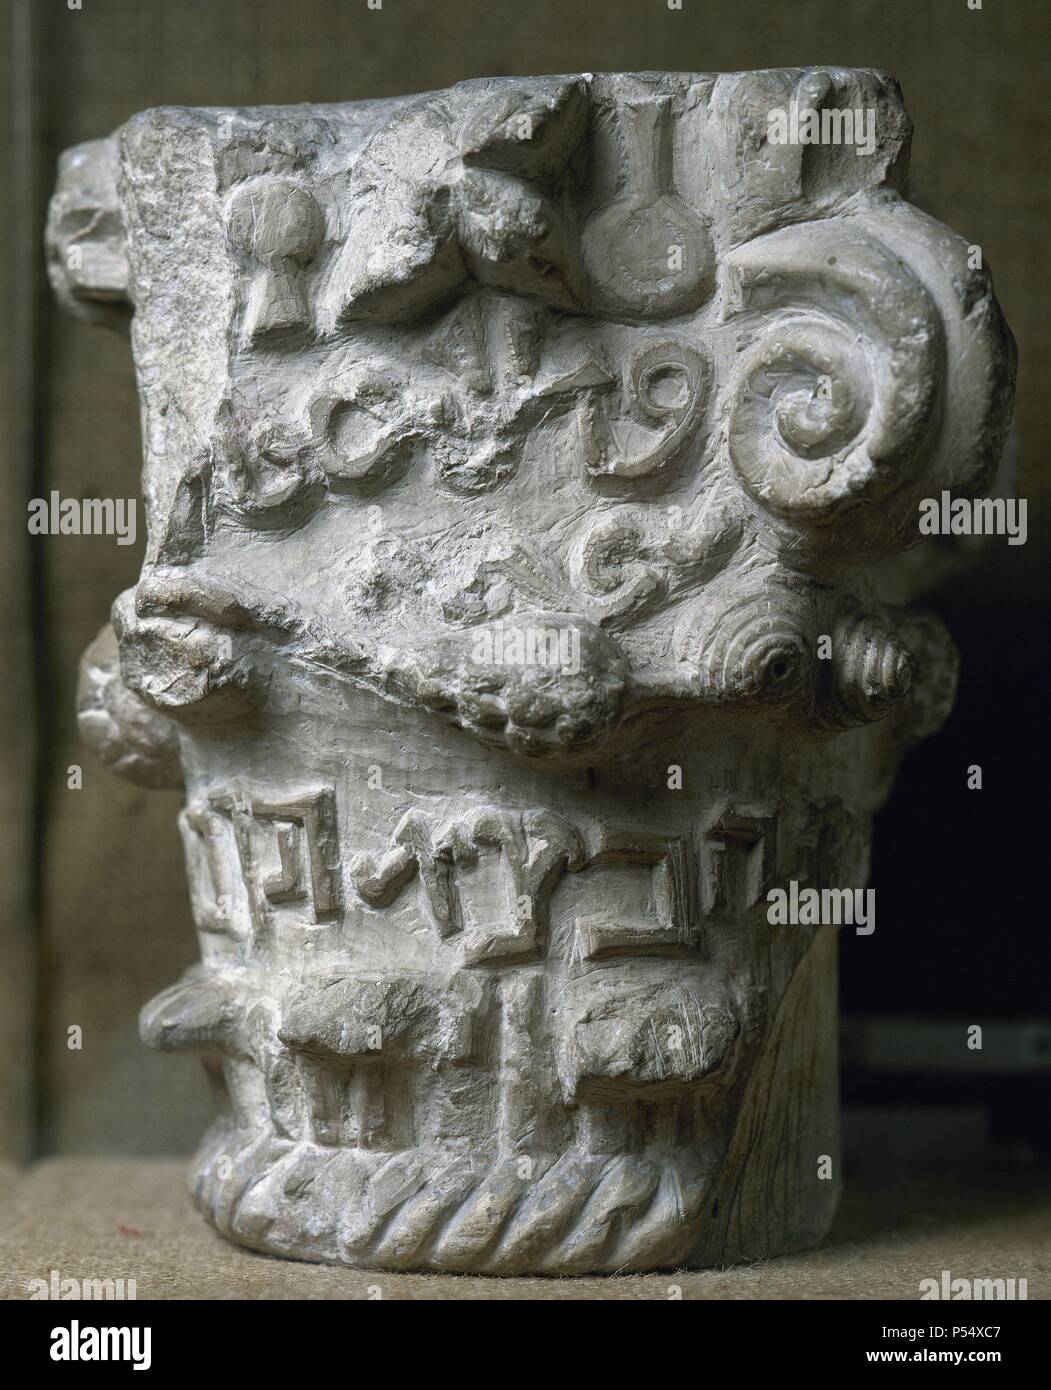 ARTE HEBREO. ESPAÑA. CAPITEL HEBREO-ARABE datado entre los siglos XII y III. Museo Sefardí. Toledo. Castilla-La Mancha. Stock Photo